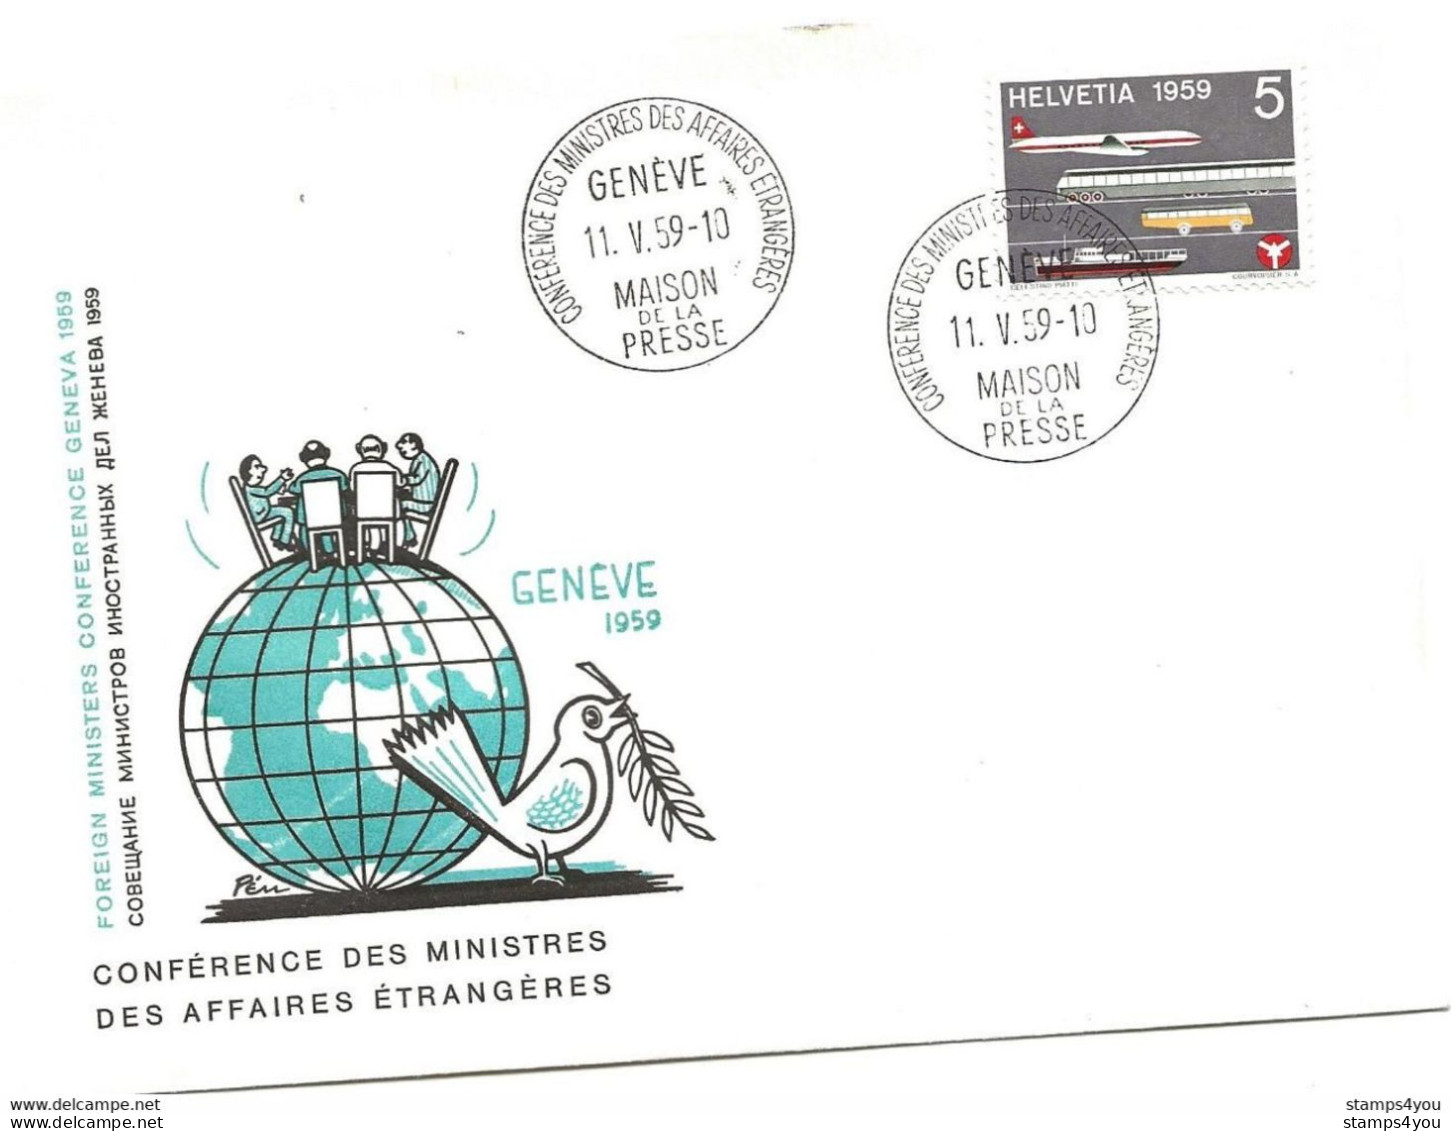 125 - 35 - Enveloppe "PEN" Avec Oblit Spéciale Genève Maison Presse - Conférence Ministres Affaires étrangères 1959 - Marcophilie